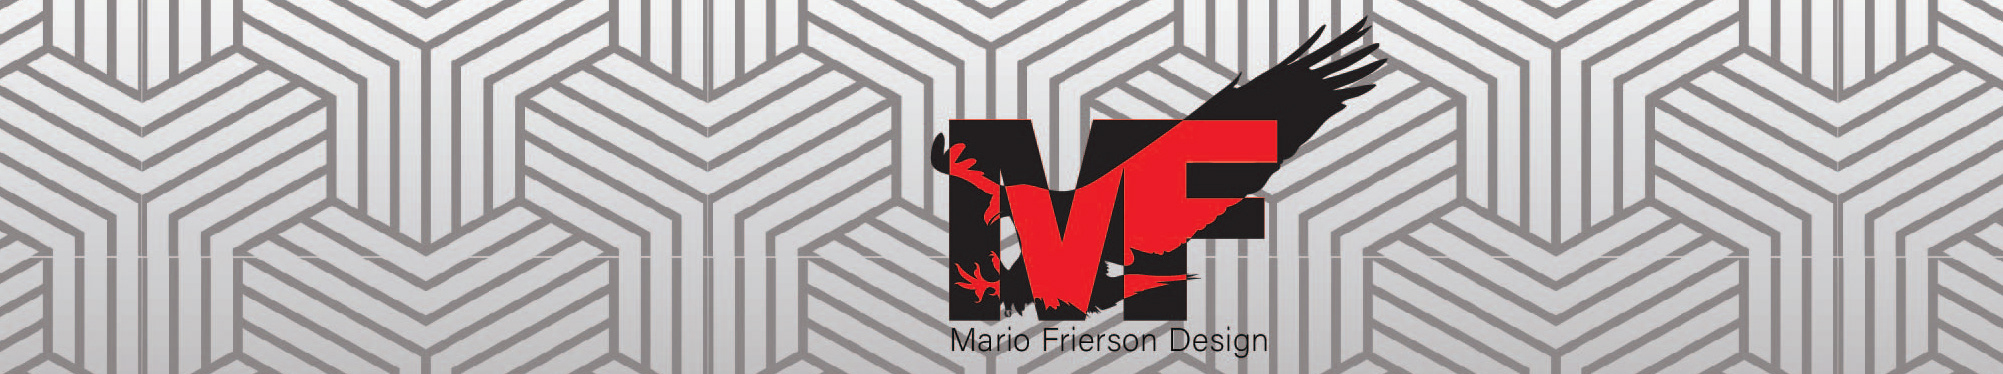 Profil-Banner von Mario Frierson